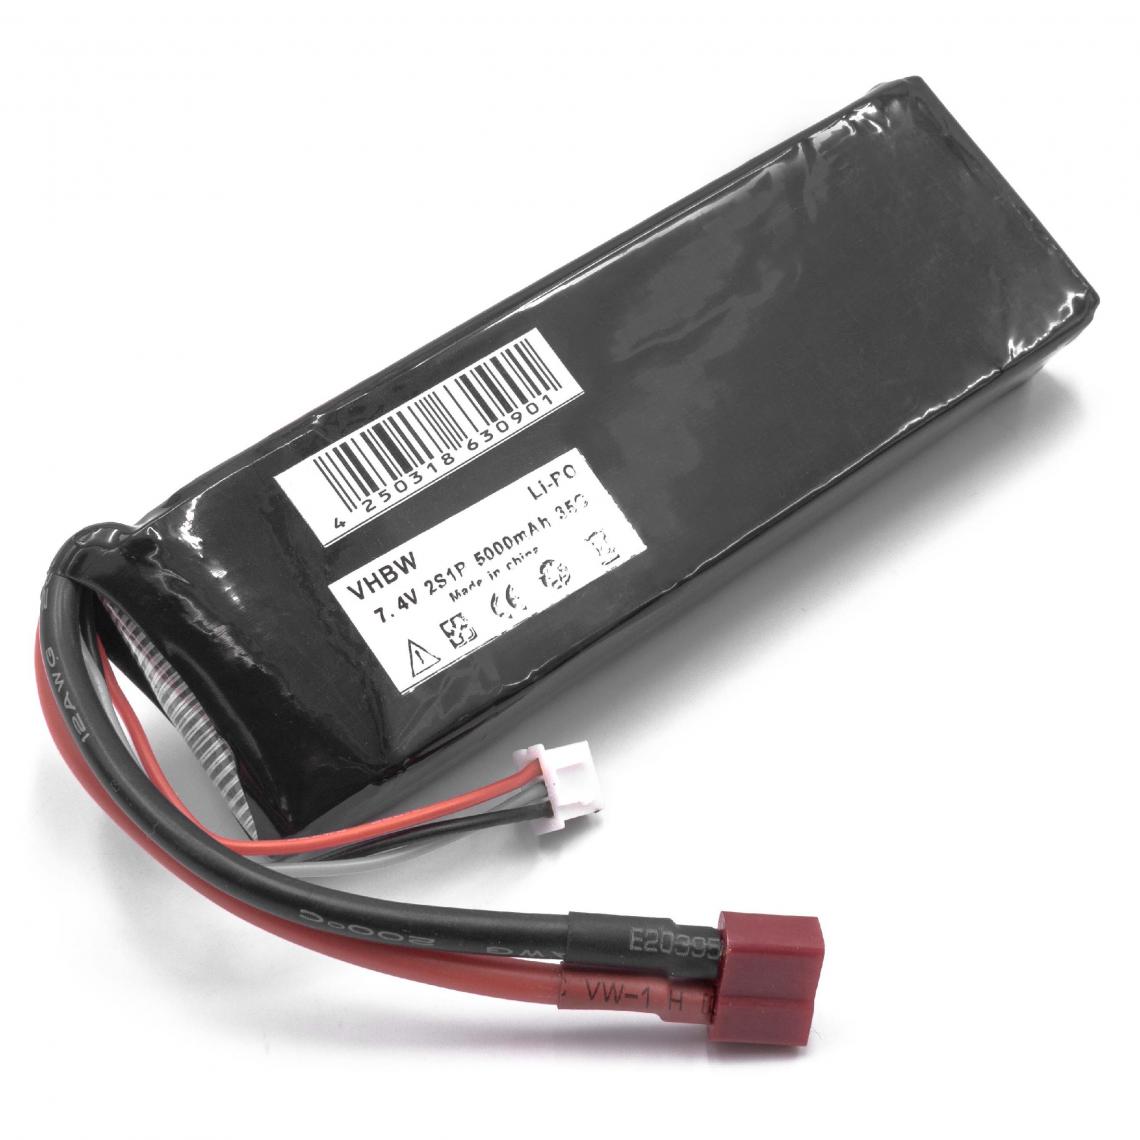 Vhbw - vhbw Batterie compatible avec HPI Sprint2 modéle RC (5000mAh, 7,4V, Li-polymère) - Batteries et chargeurs